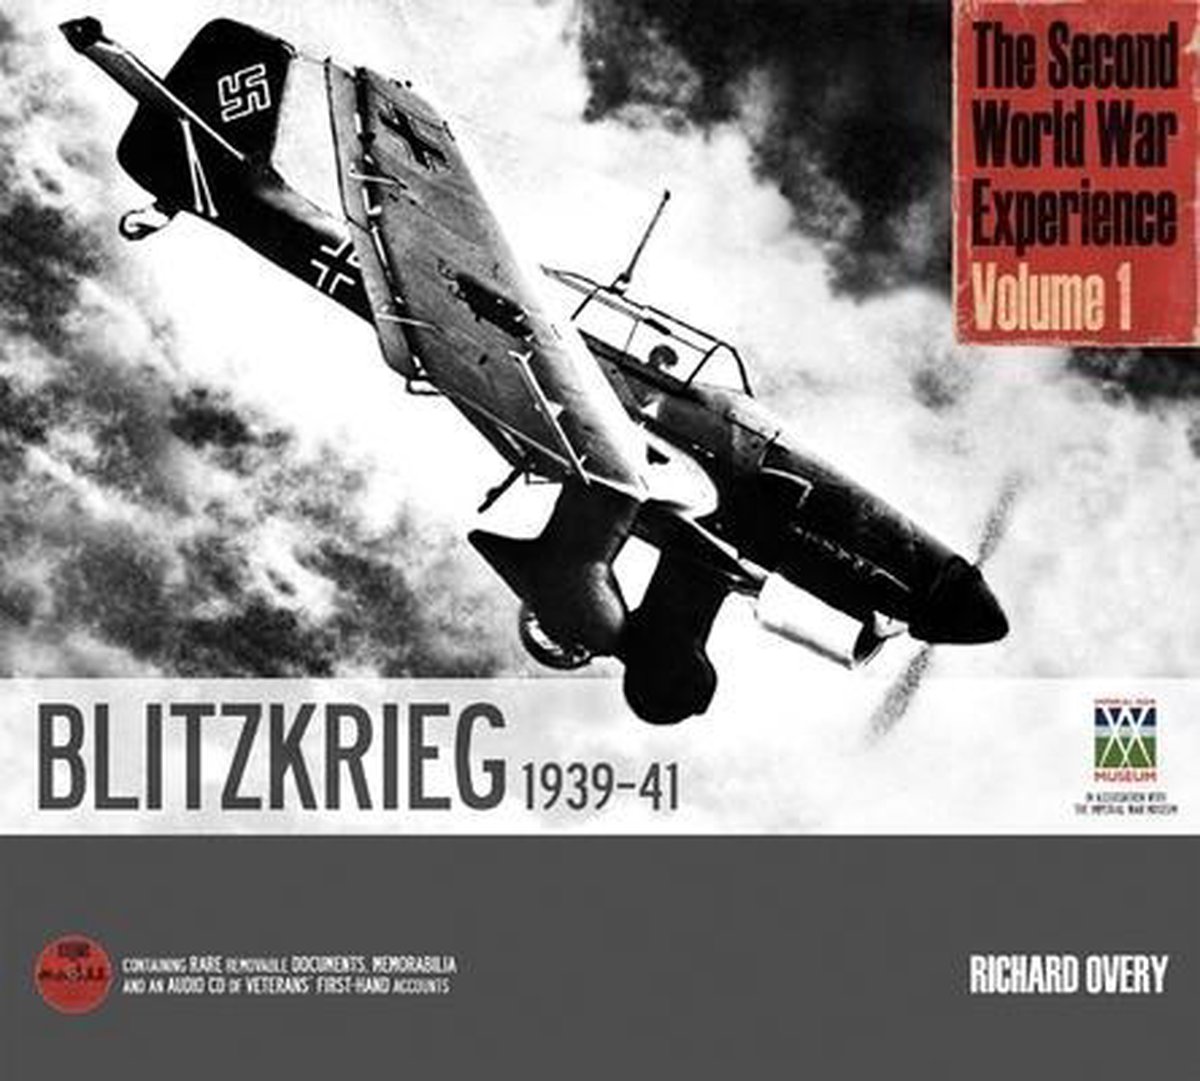 Second World War Experience: Blitzkrieg 1939-41